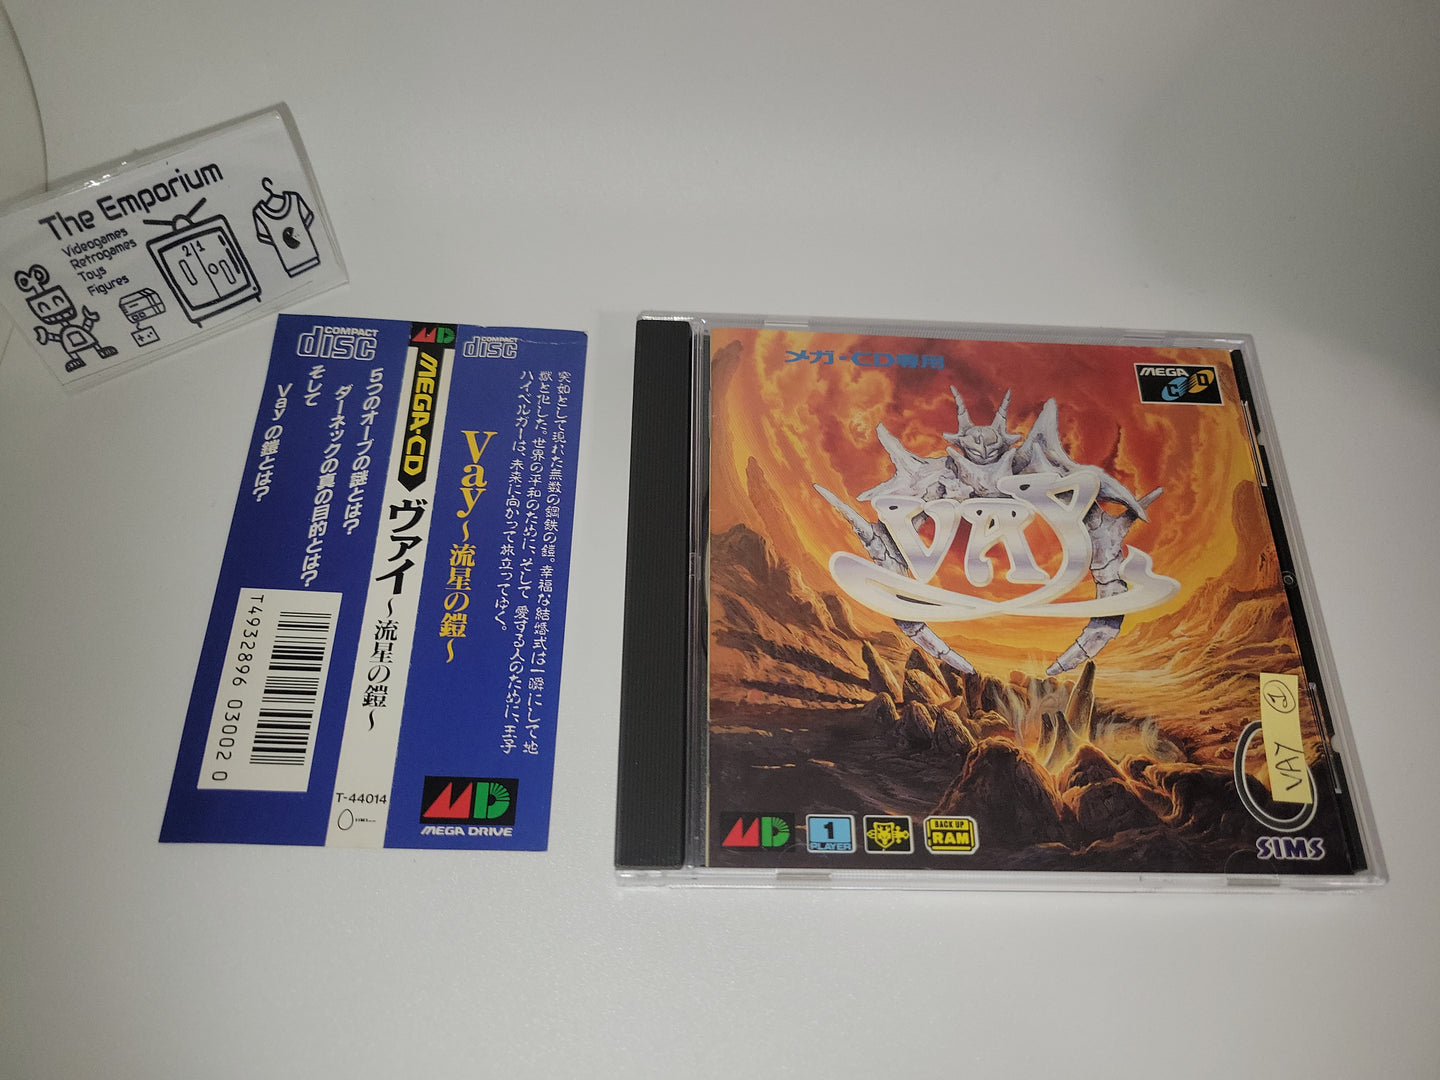 Vay: Ryuusei no Yoroi - Sega MCD MD MegaDrive Mega Cd